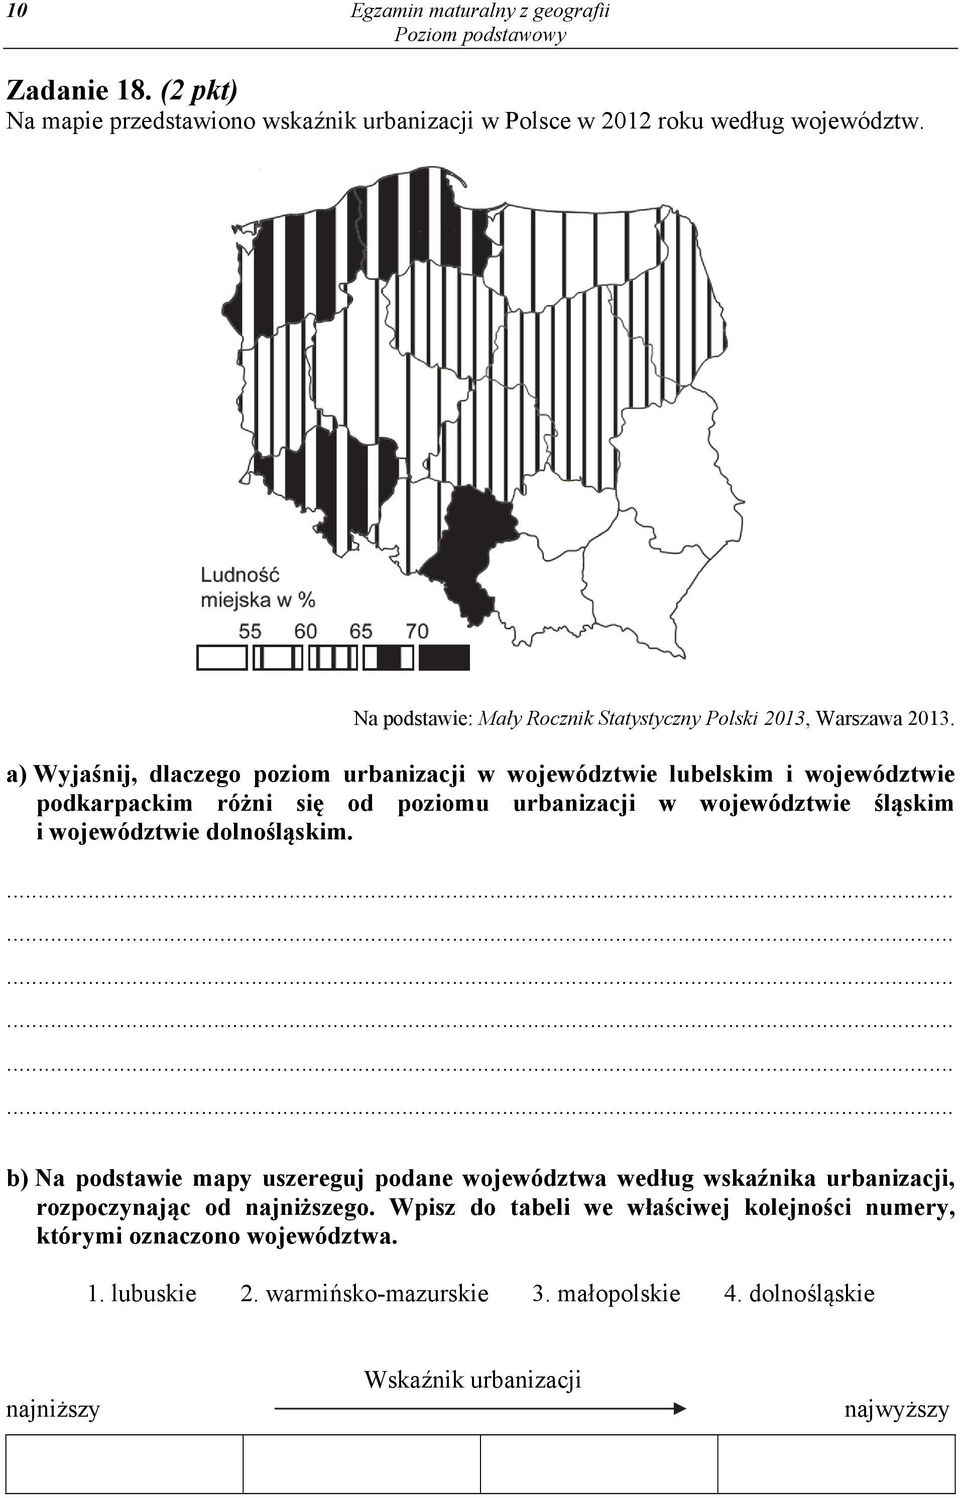 a) Wyjaśnij, dlaczego poziom urbanizacji w województwie lubelskim i województwie podkarpackim różni się od poziomu urbanizacji w województwie śląskim i województwie